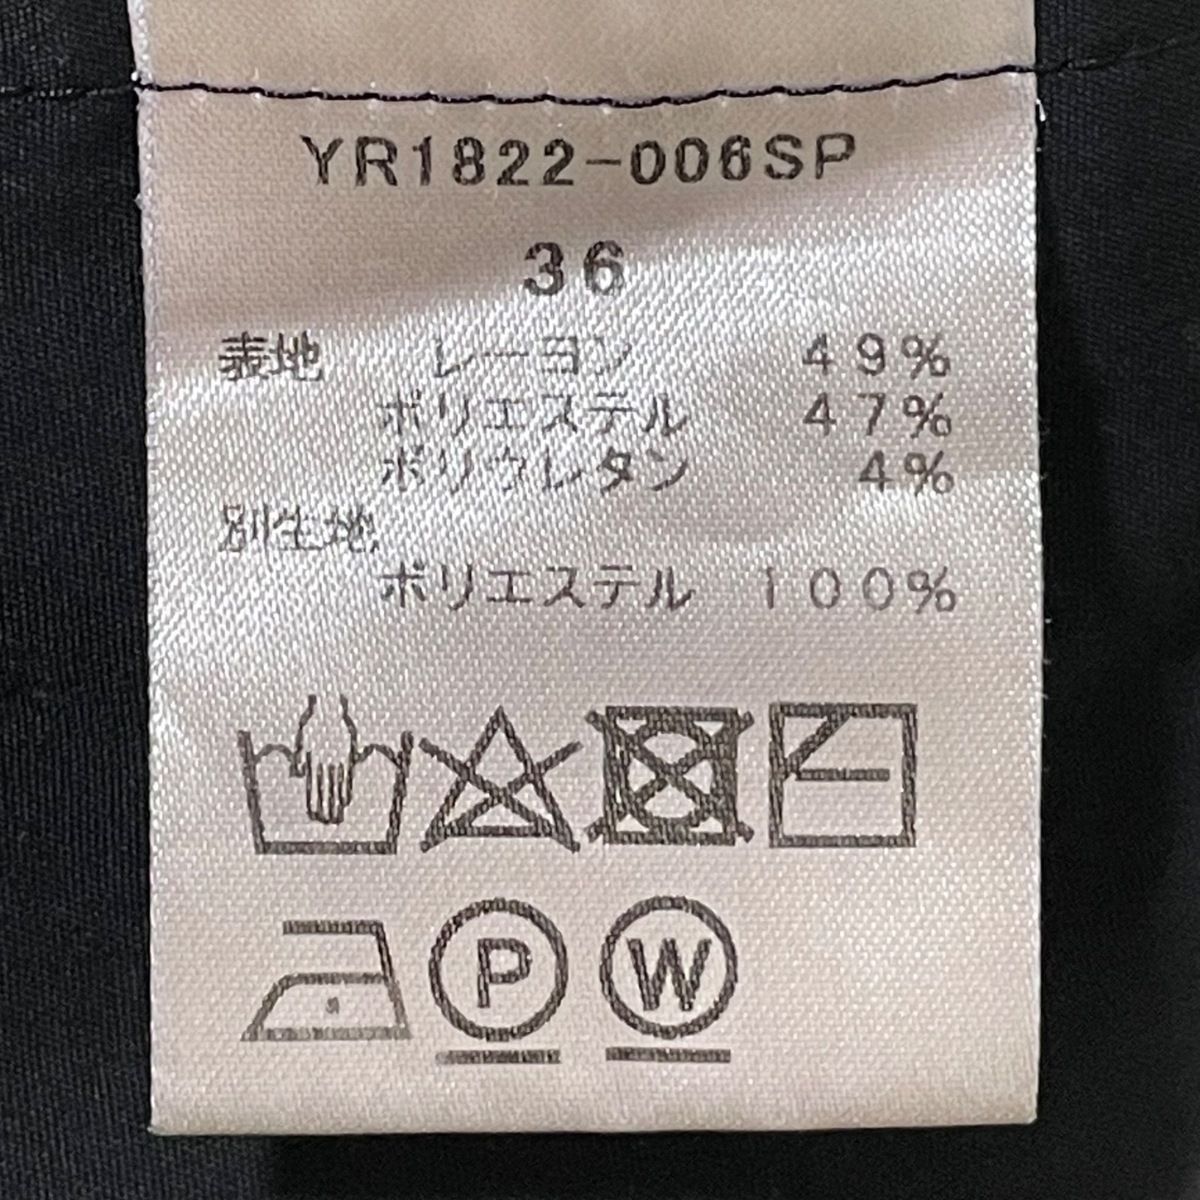 yori(ヨリ) パンツ サイズ36 S レディース - 黒 クロップド(半端丈 ...